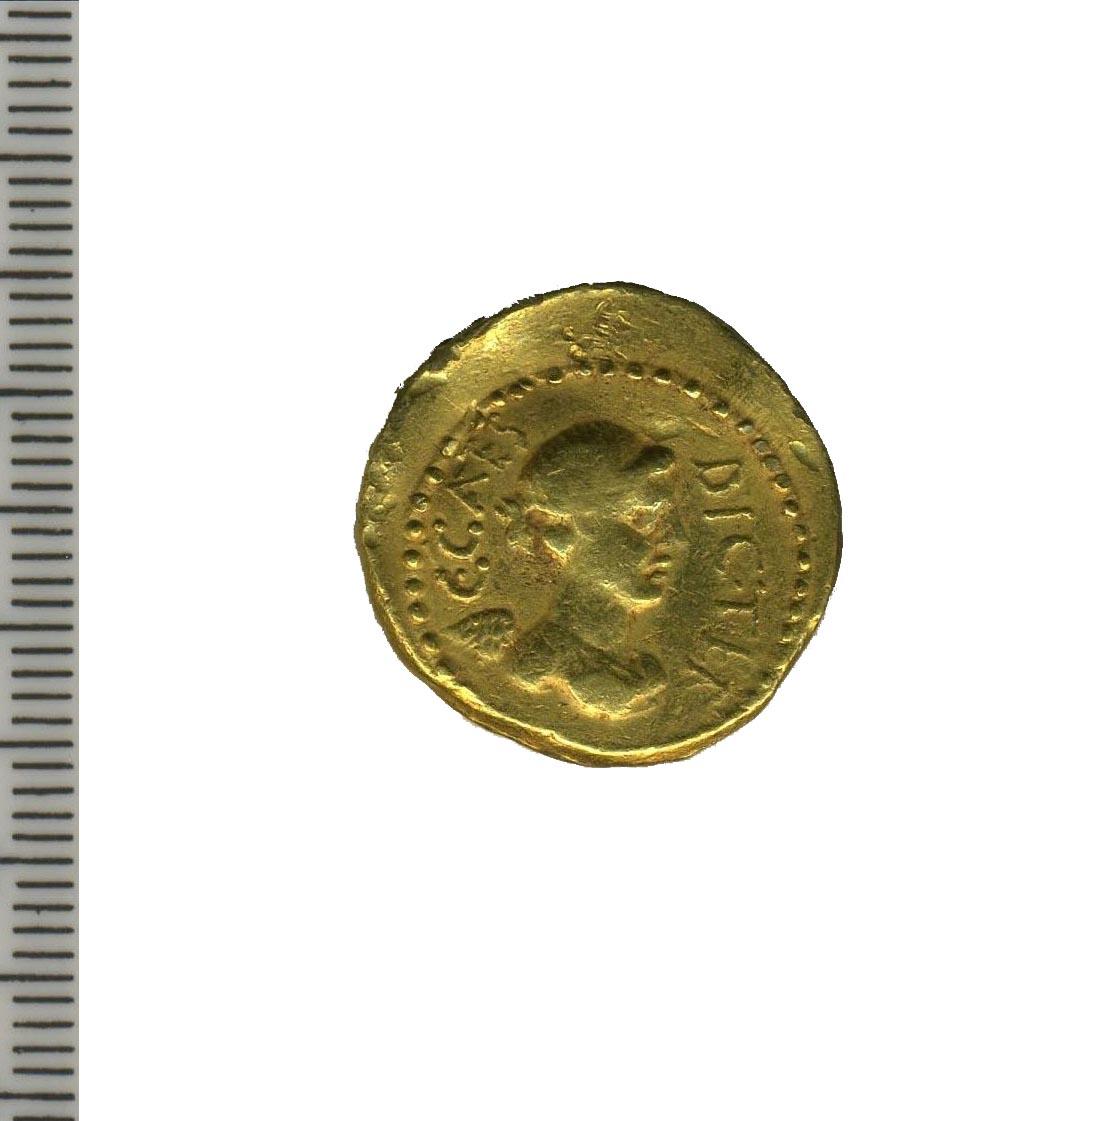 moneta - aureo - produzione romana repubblicana (sec. I a.C)